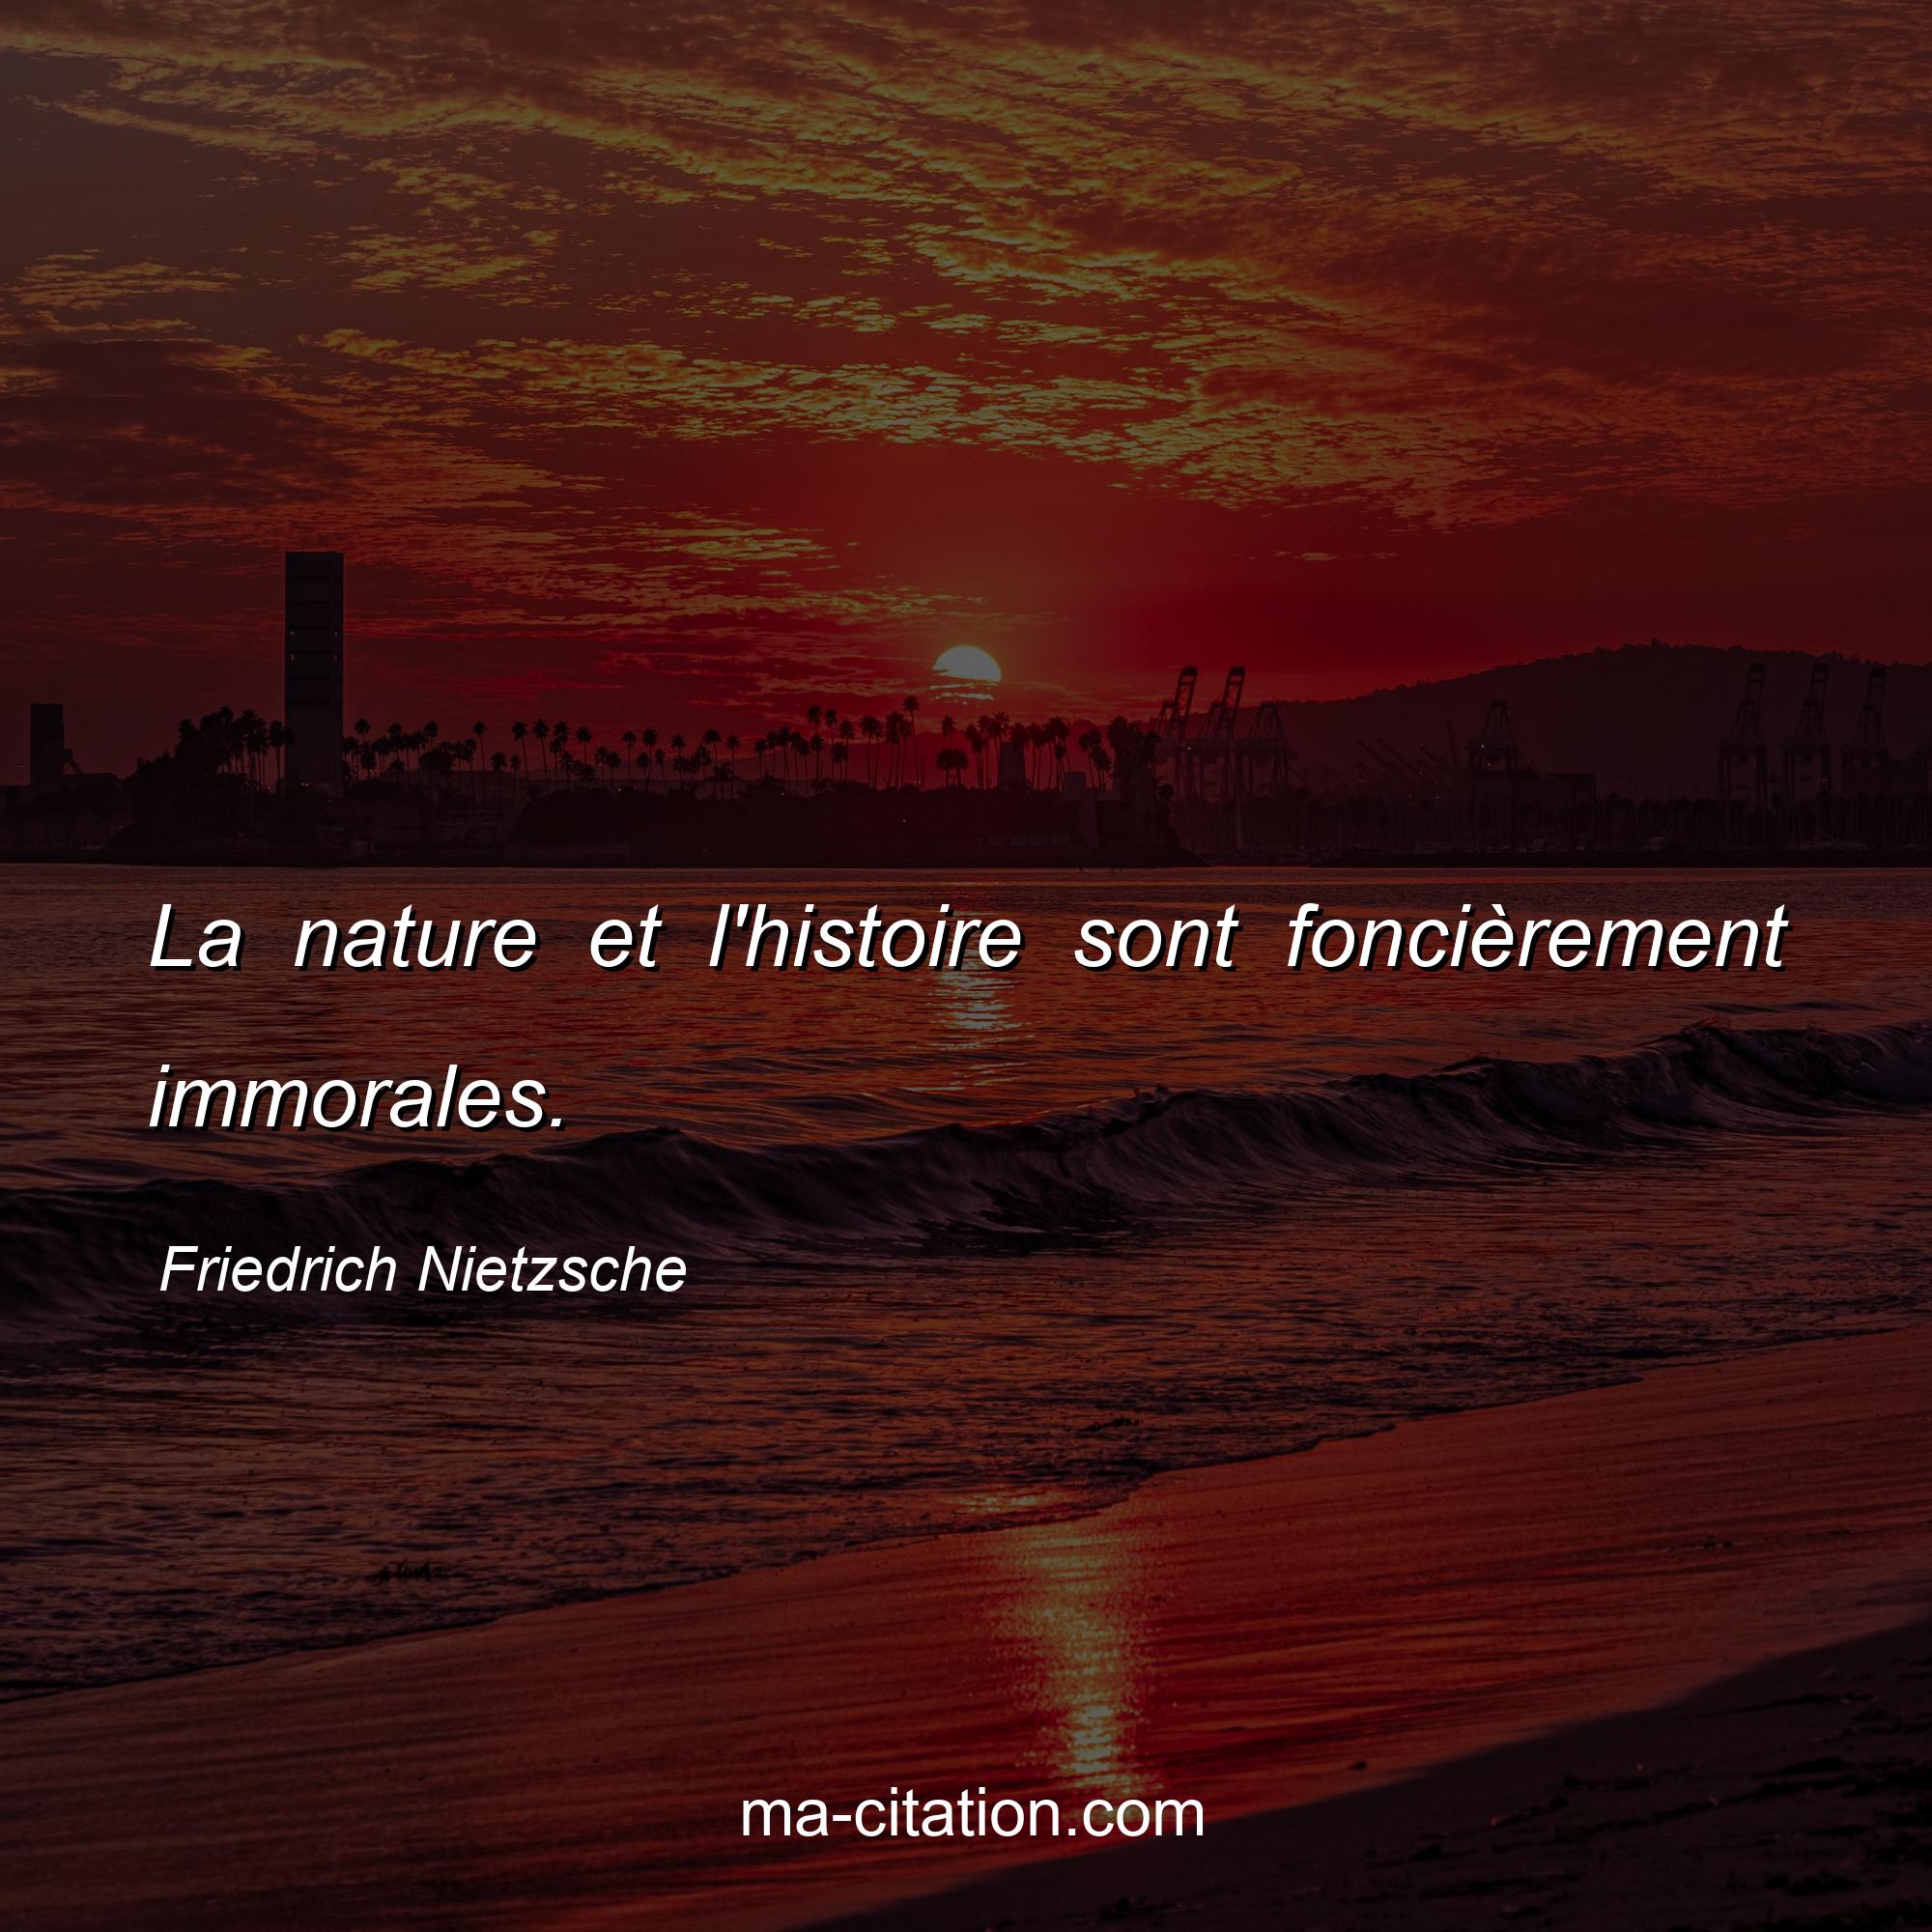 Friedrich Nietzsche : La nature et l'histoire sont foncièrement immorales.